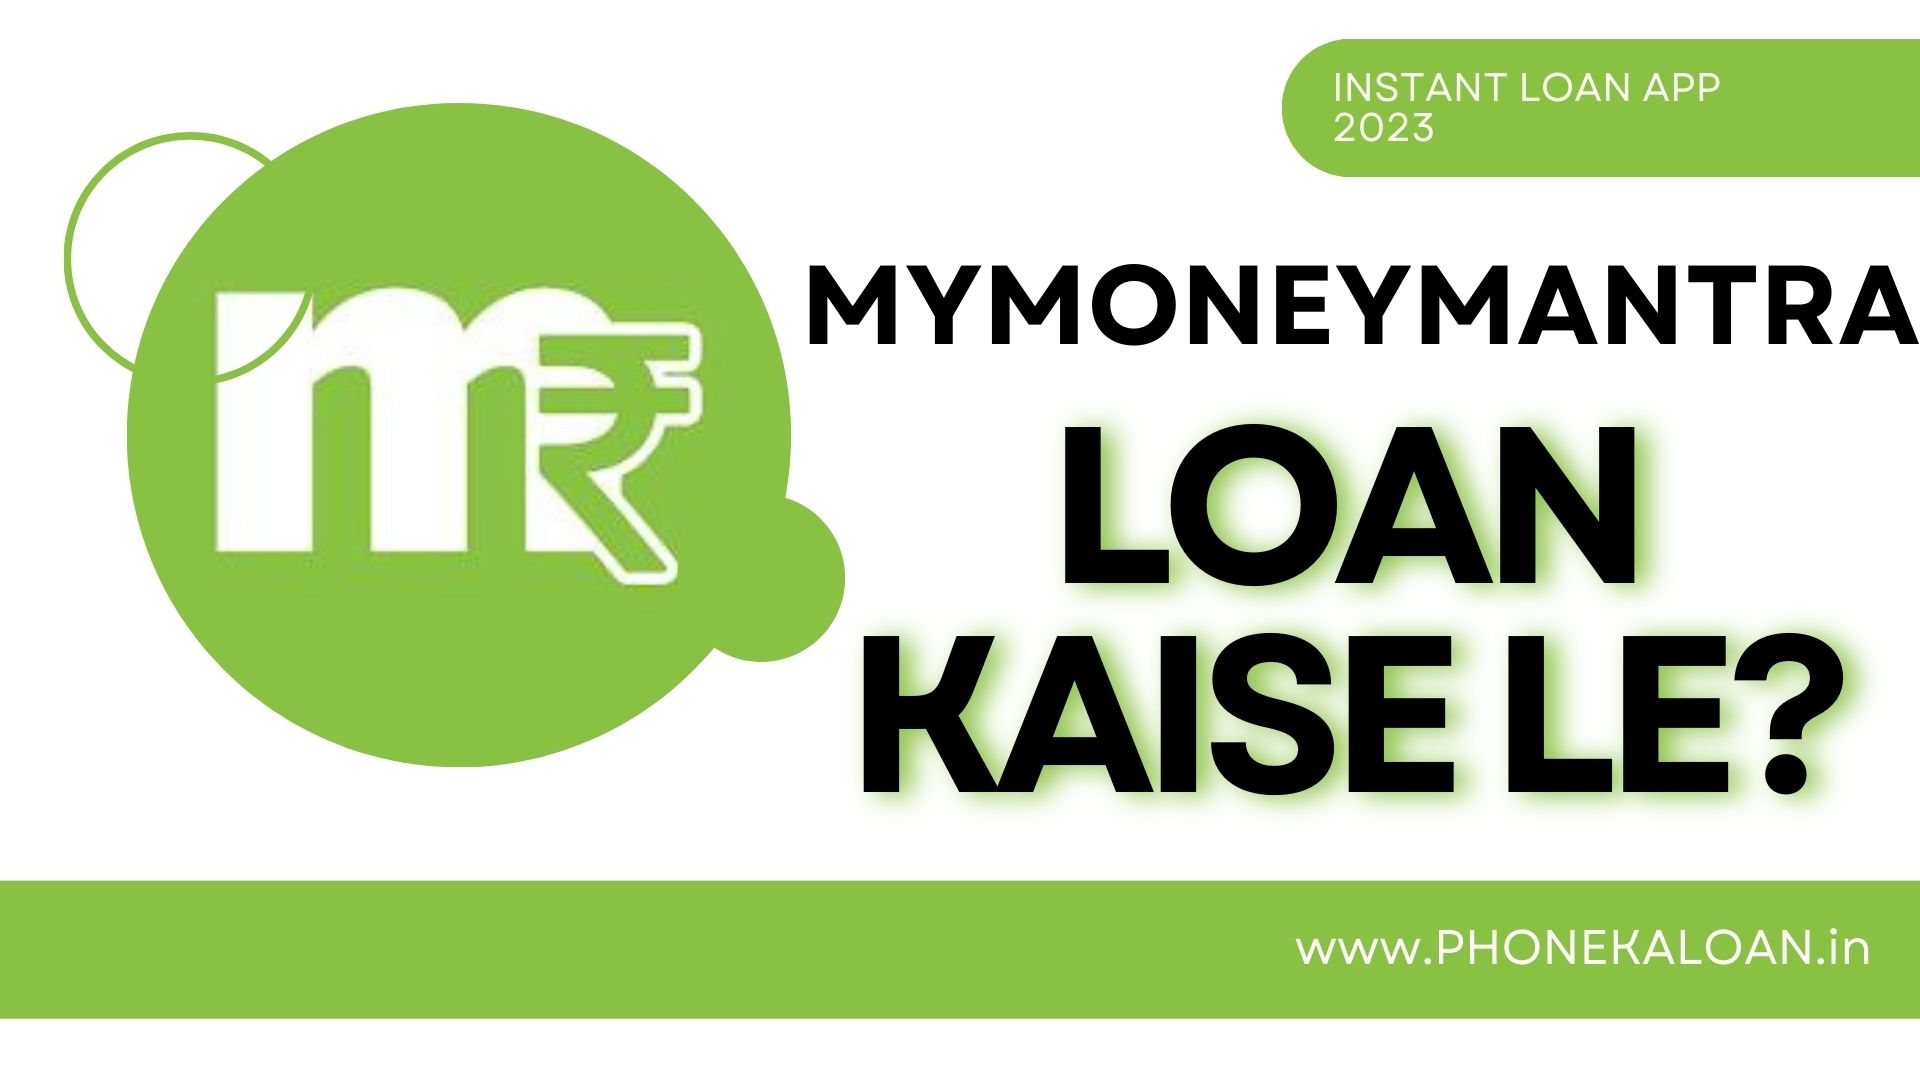 MyMoneyMantra Loan App Se Loan Kaise Le?